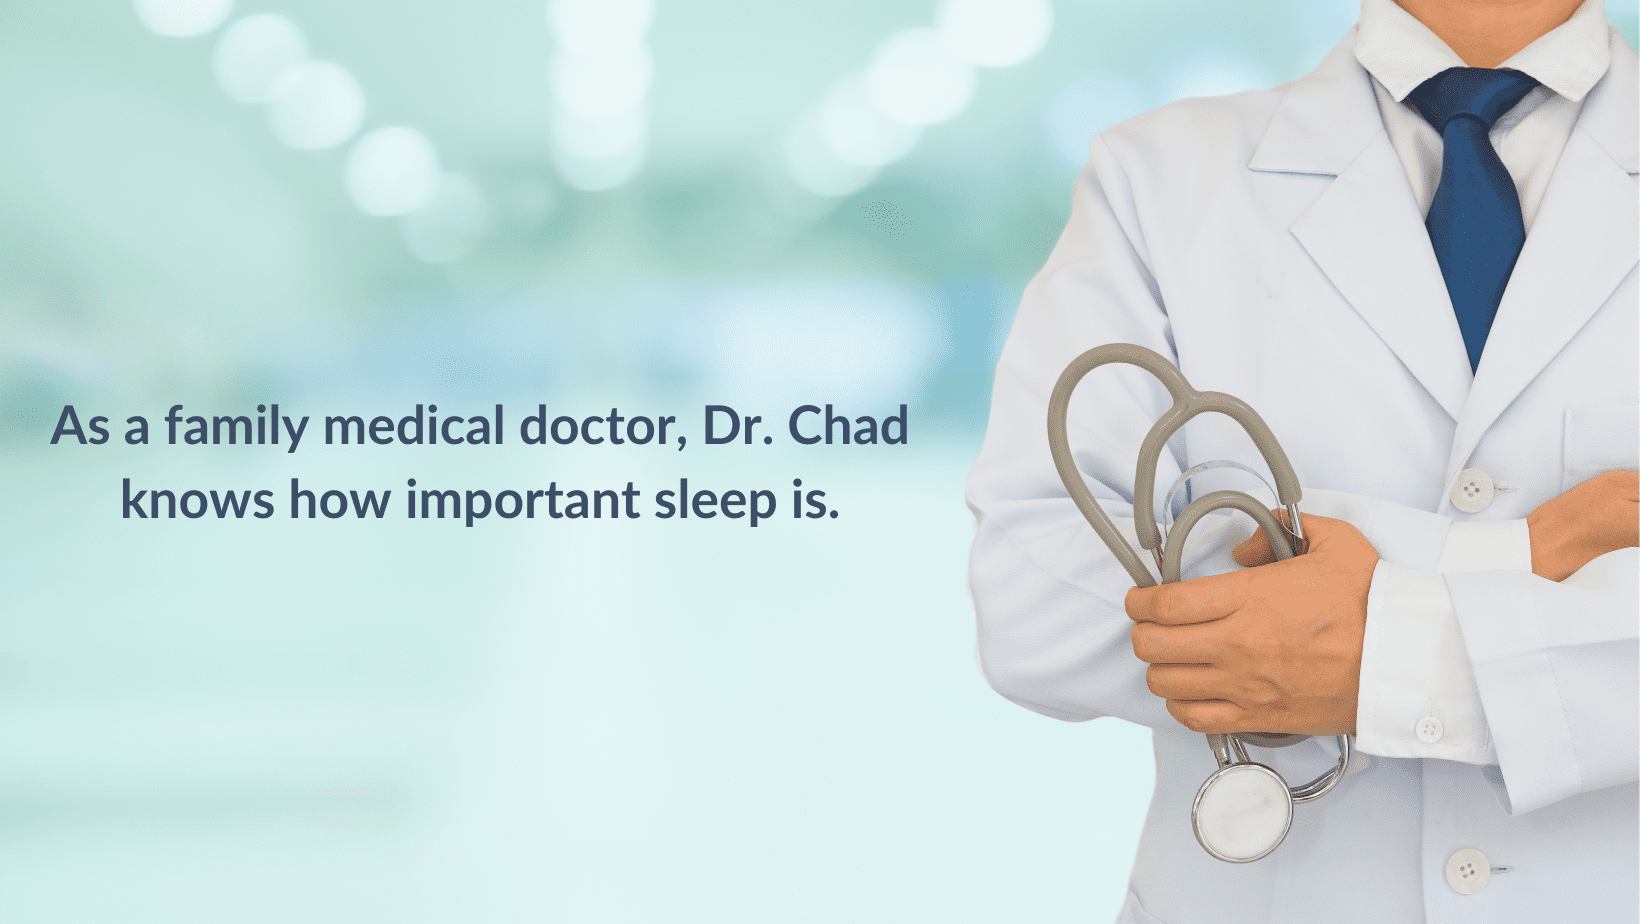 Dr. Chad